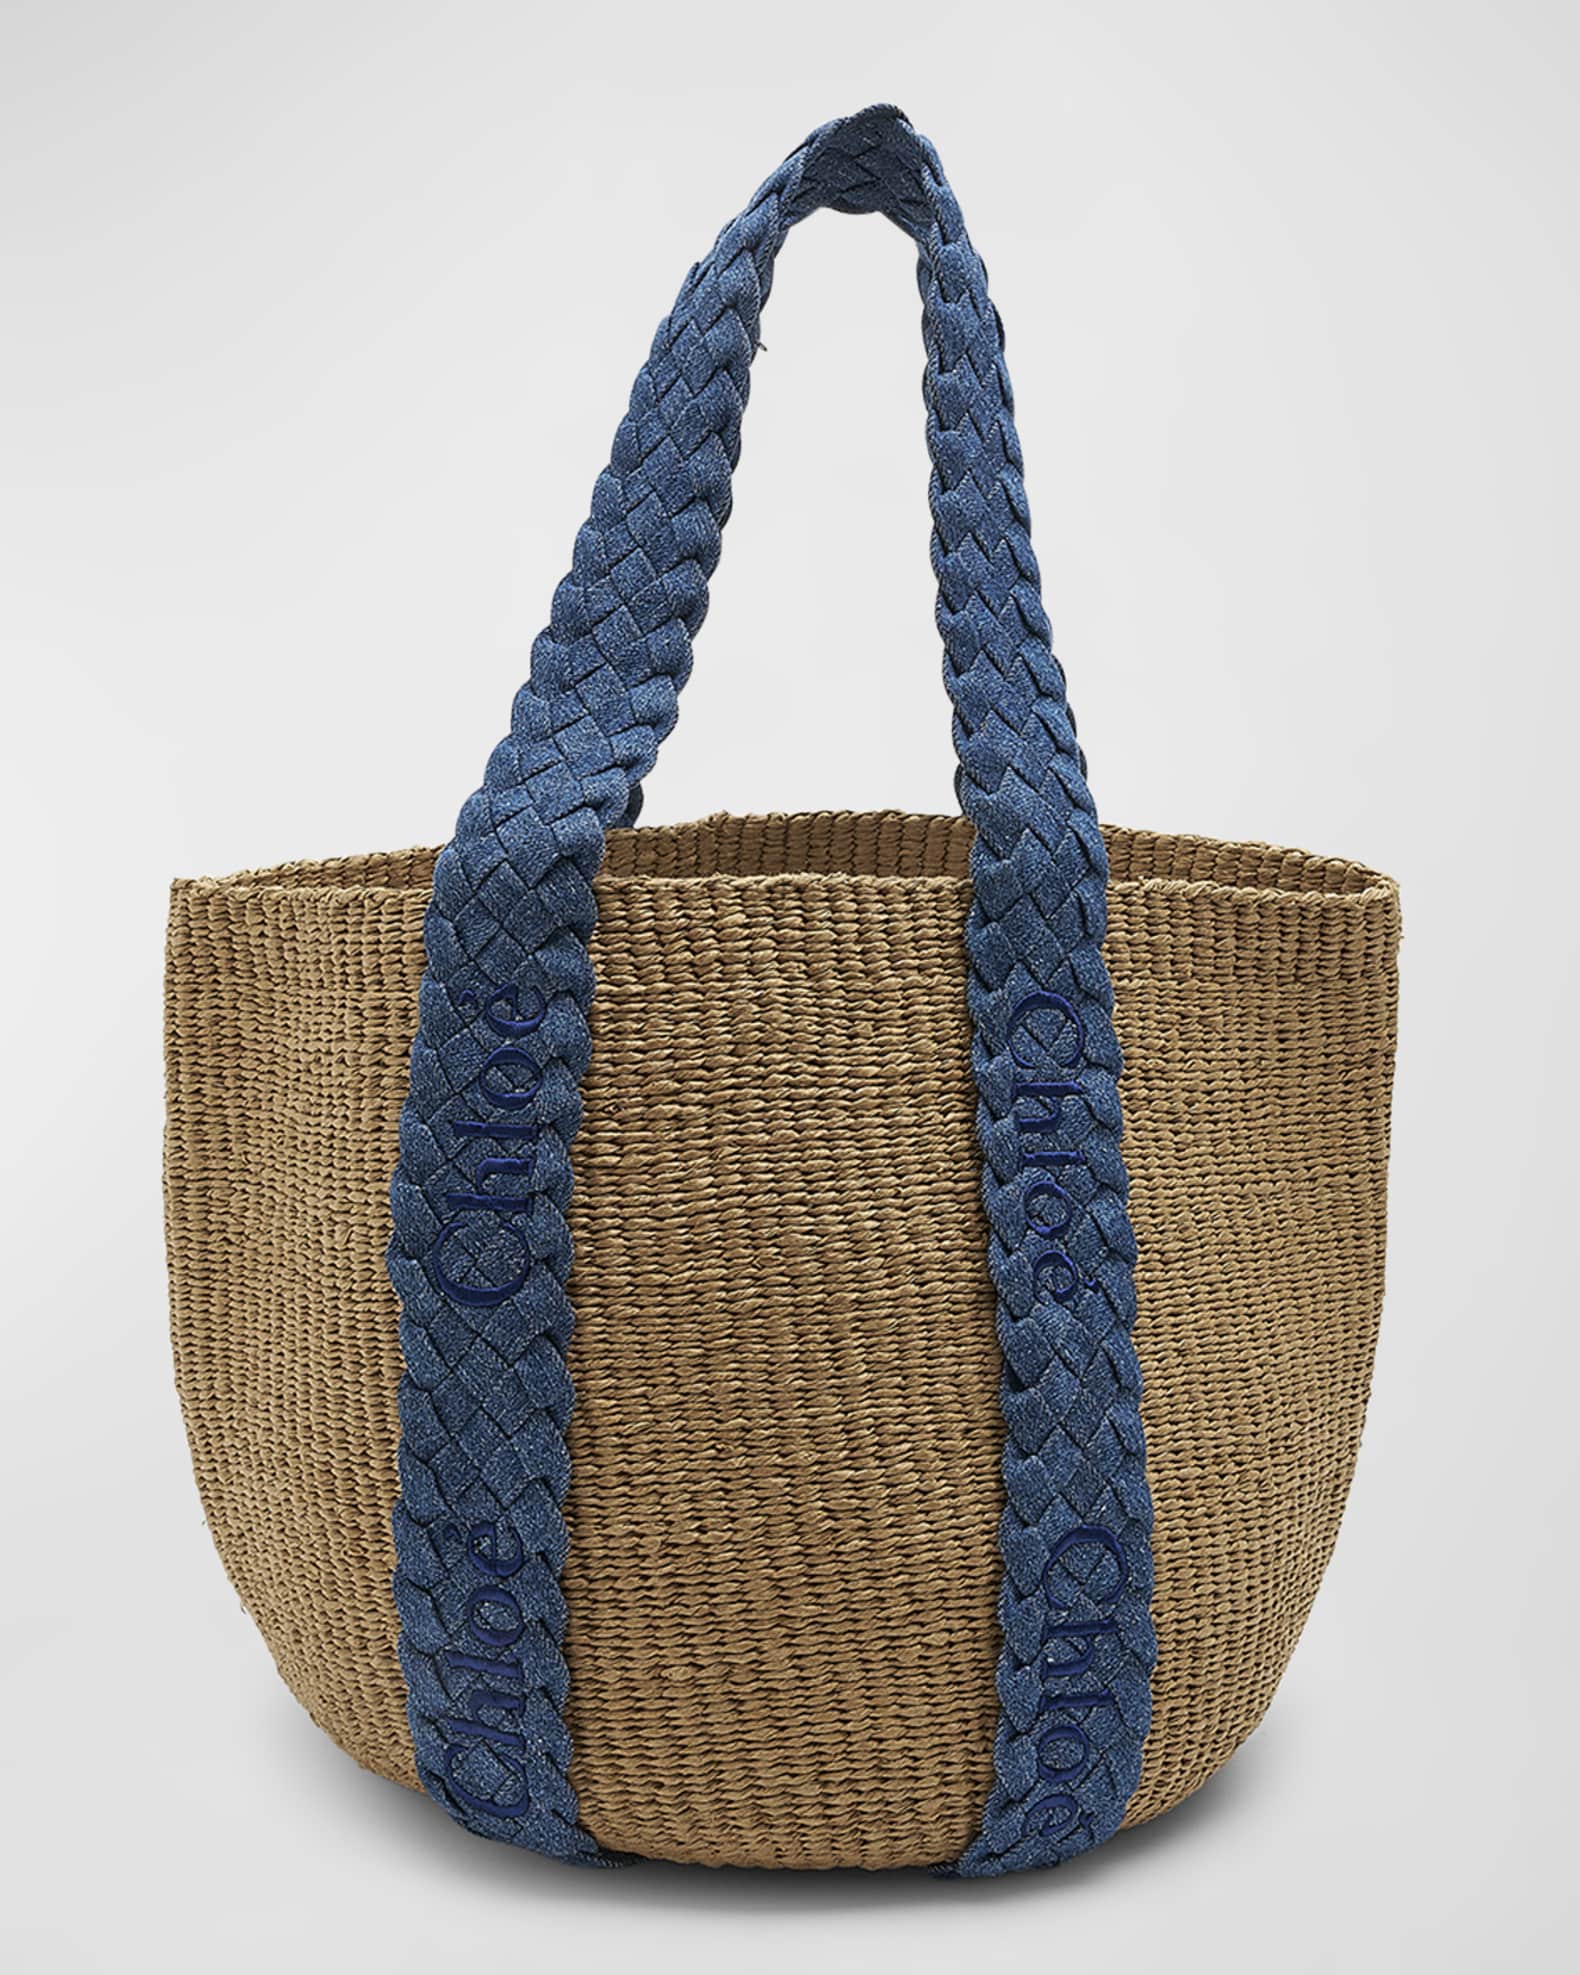 MyEA Bag woven straw shopper bag